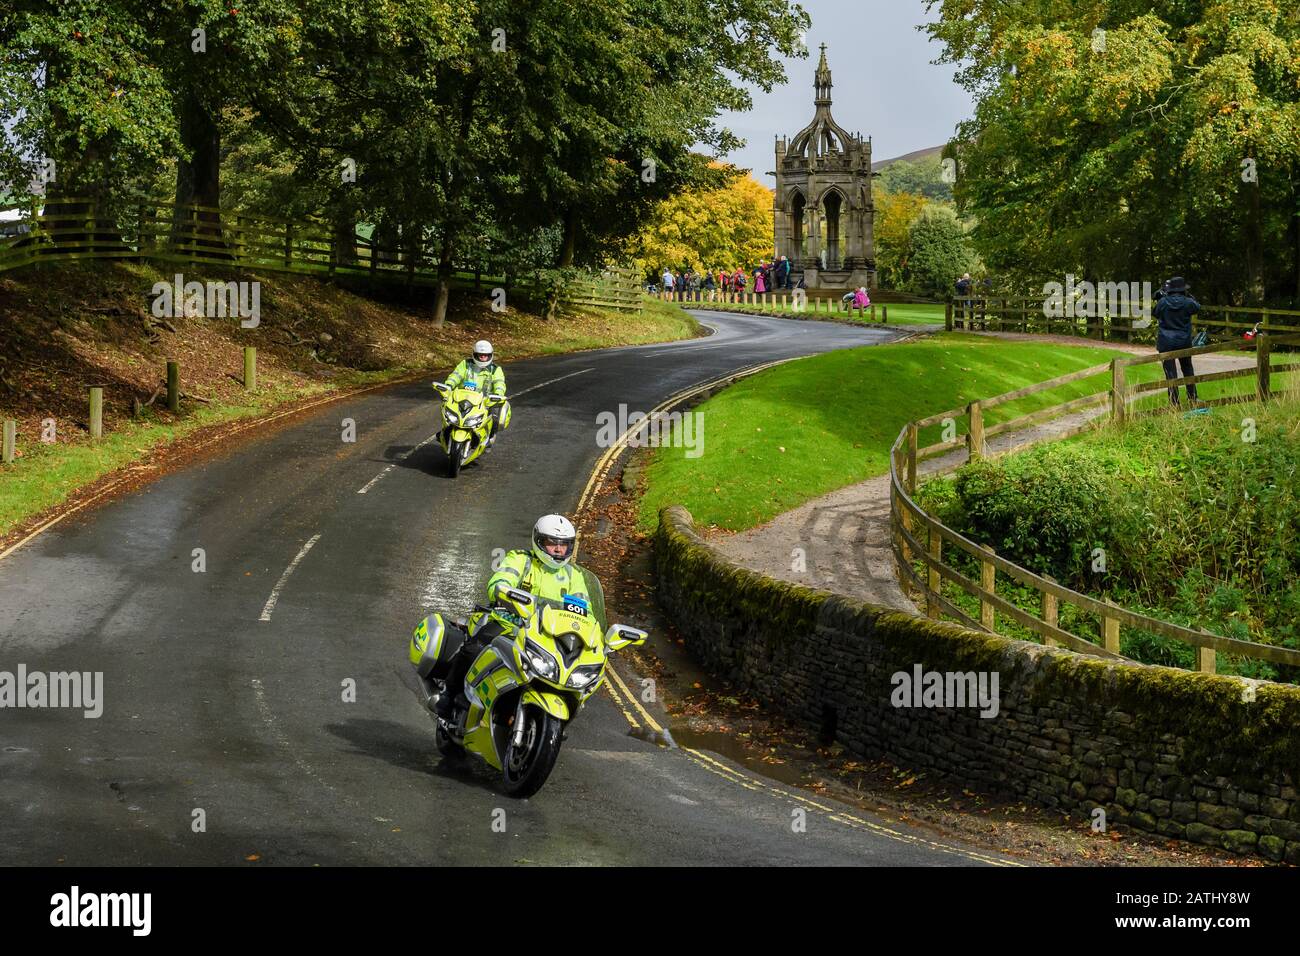 2 ambulanciers paramédicaux masculins, voyageant sur des motos (ambulanciers) - véhicules à réponse rapide sur appel (voie nationale, Abbaye de Bolton, Yorkshire, GB, Royaume-Uni) Banque D'Images